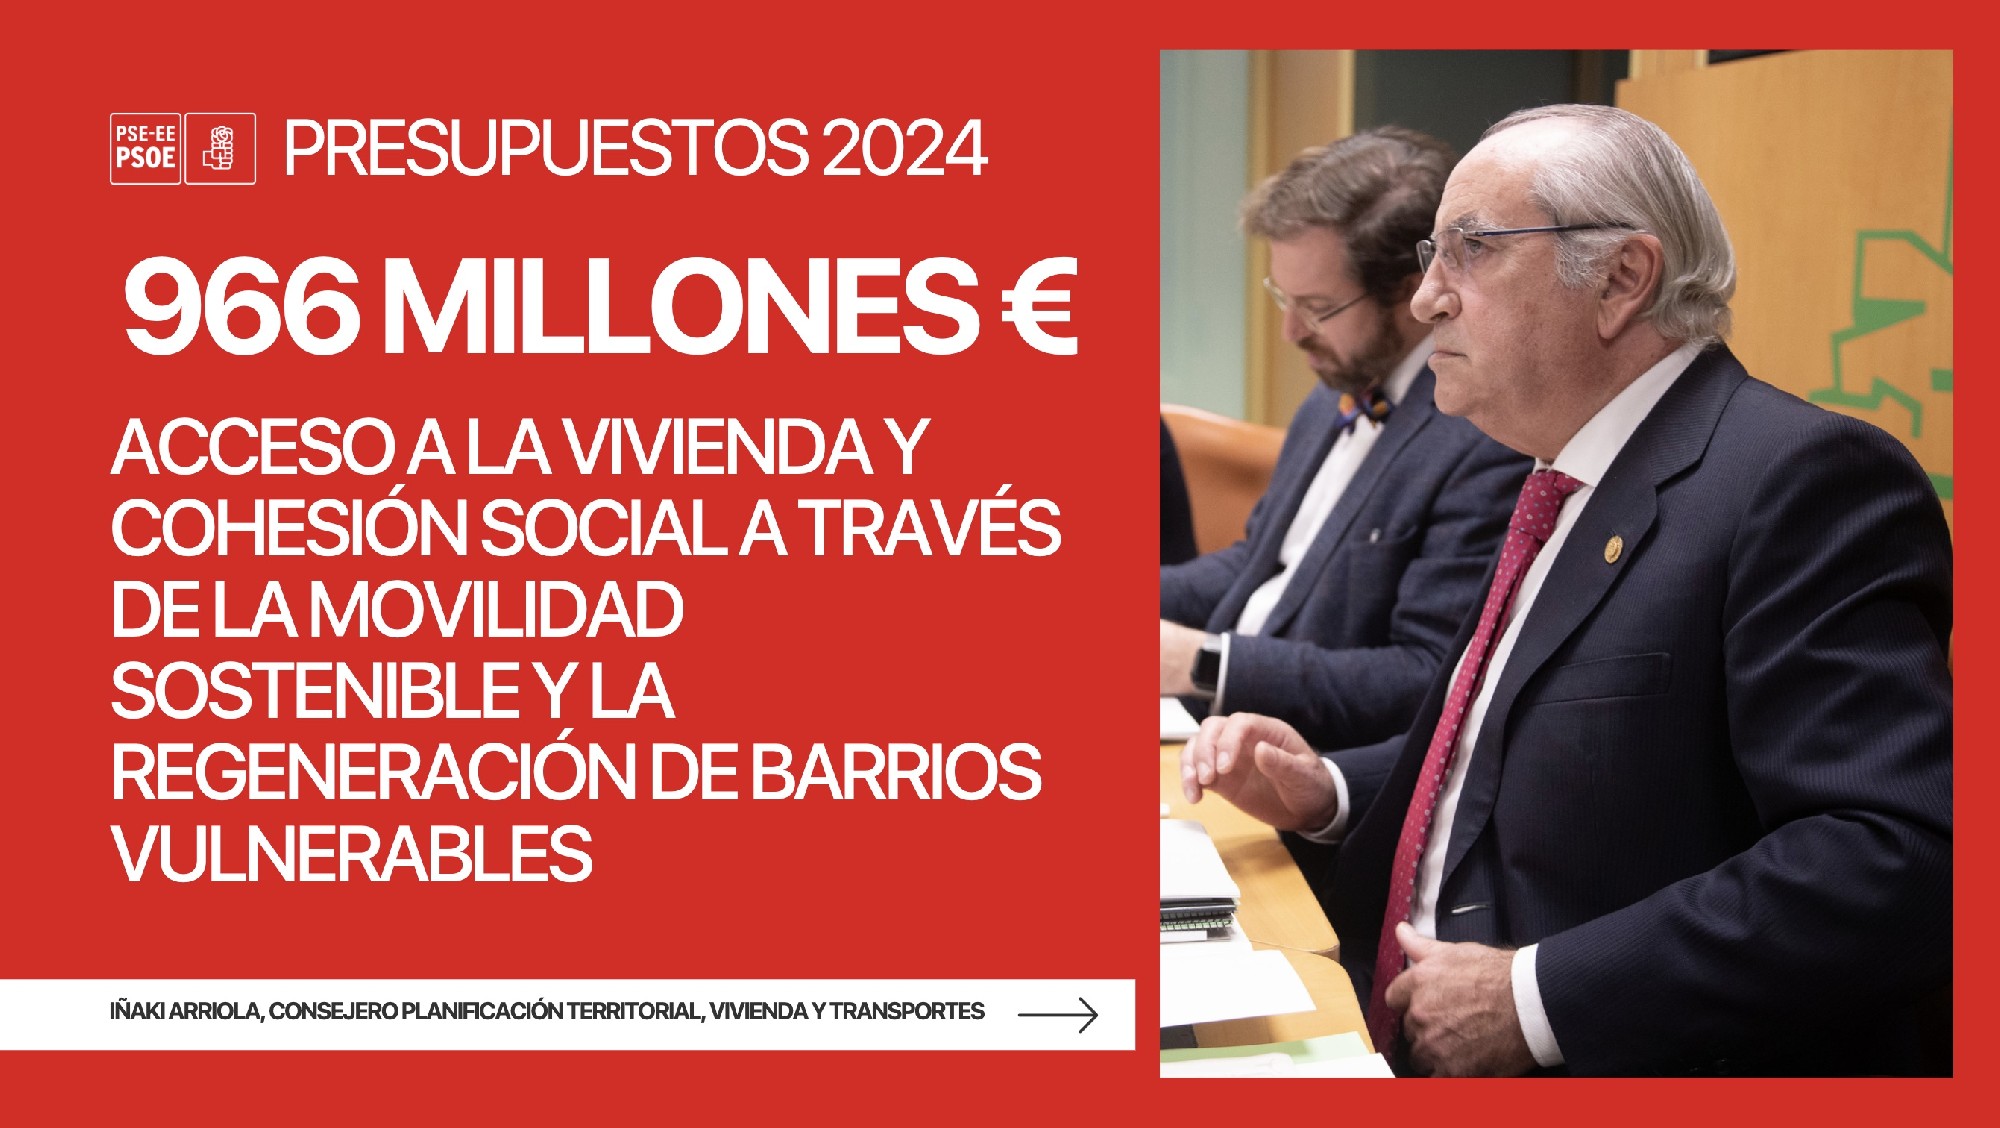 El acceso a la vivienda y la cohesión social de Euskadi a través de la movilidad sostenible y de la regeneración de barrios vulnerables contarán con un presupuesto de 966,4 millones de euros en 2024 